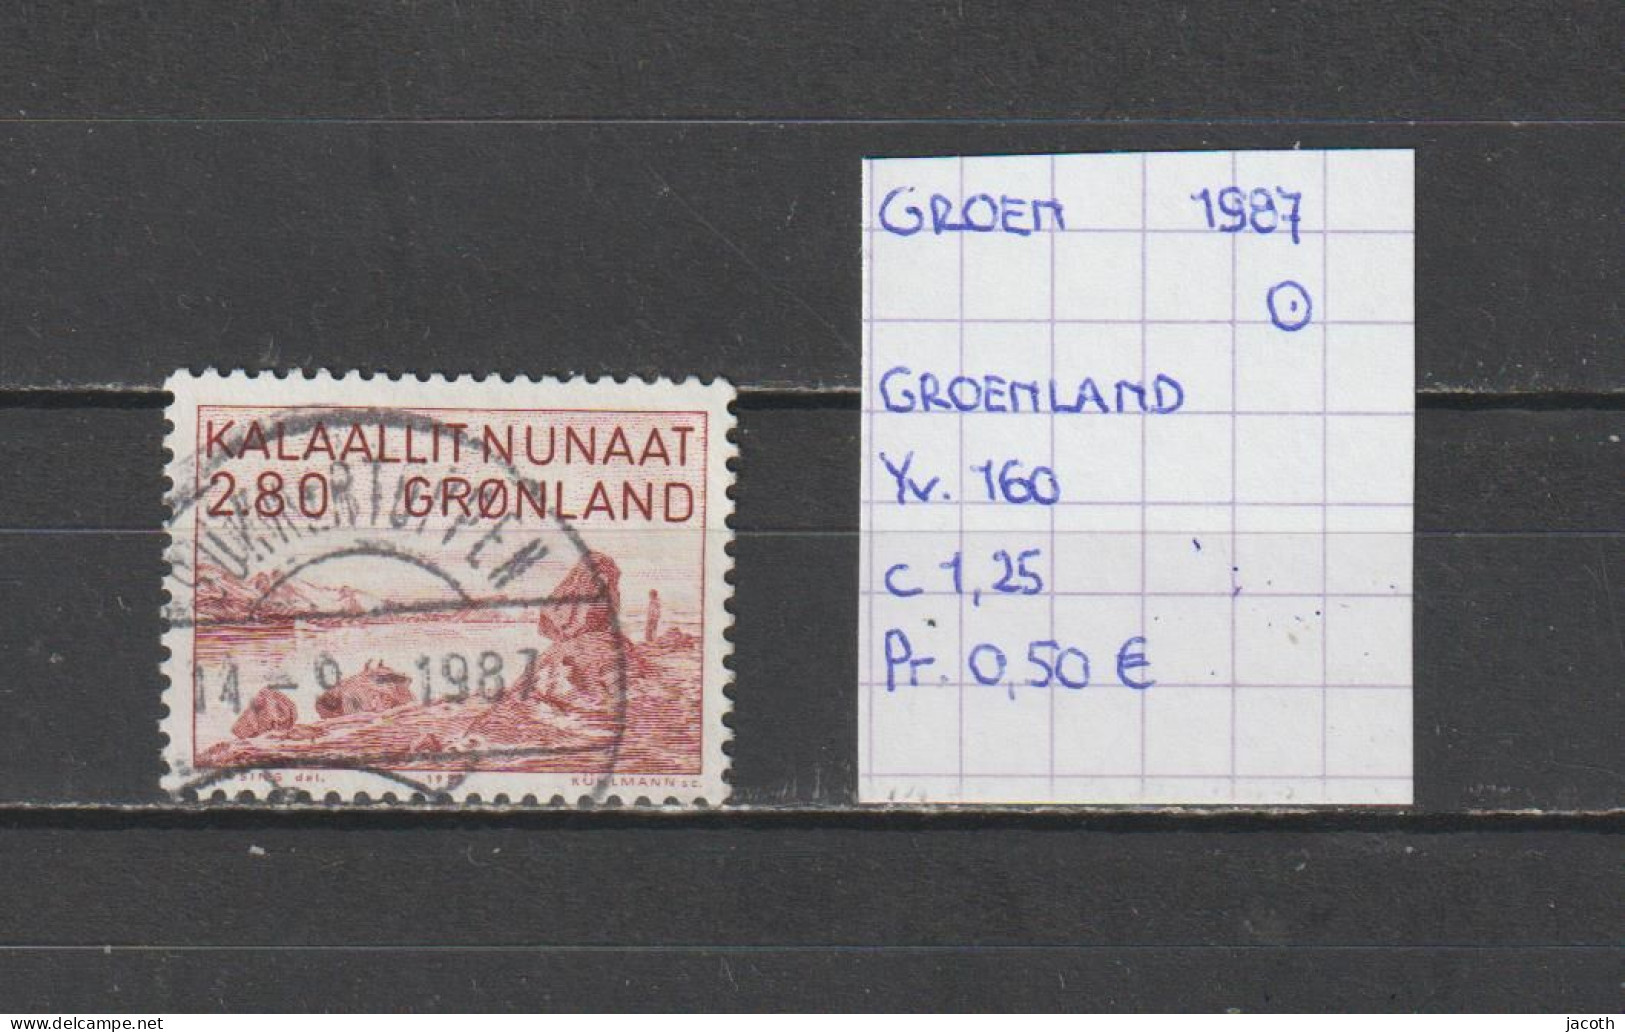 (TJ) Groenland 1987 - YT 160 (gest./obl./used) - Gebraucht